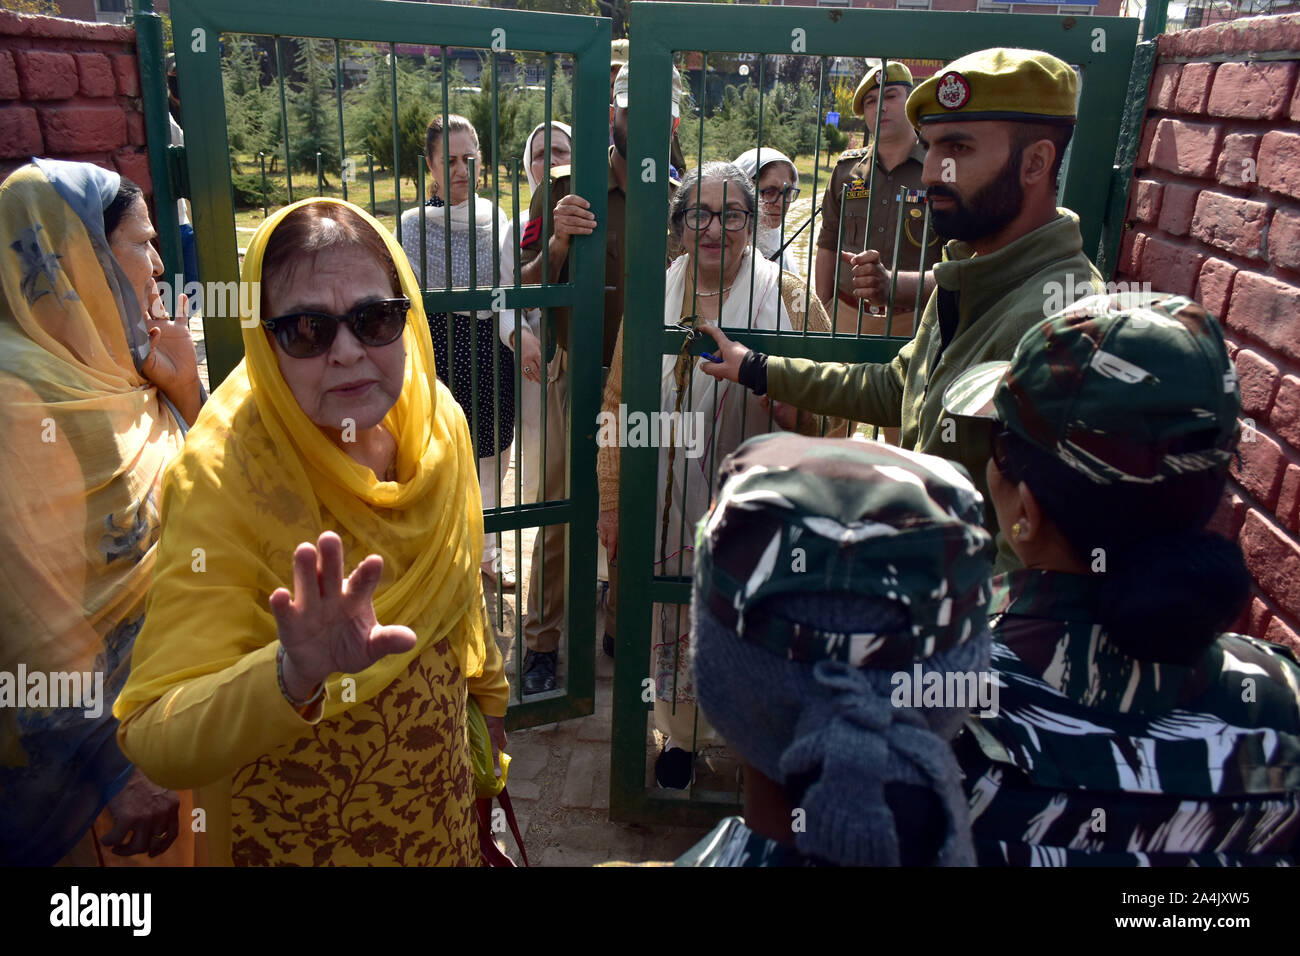 Les forces gouvernementales manifestants bloc pendant la démonstration.Les femmes du Cachemire organiser une protestation contre l'abrogation de l'article 370 par le gouvernement central qui accorde un statut spécial à Jammu-et-Cachemire. Banque D'Images